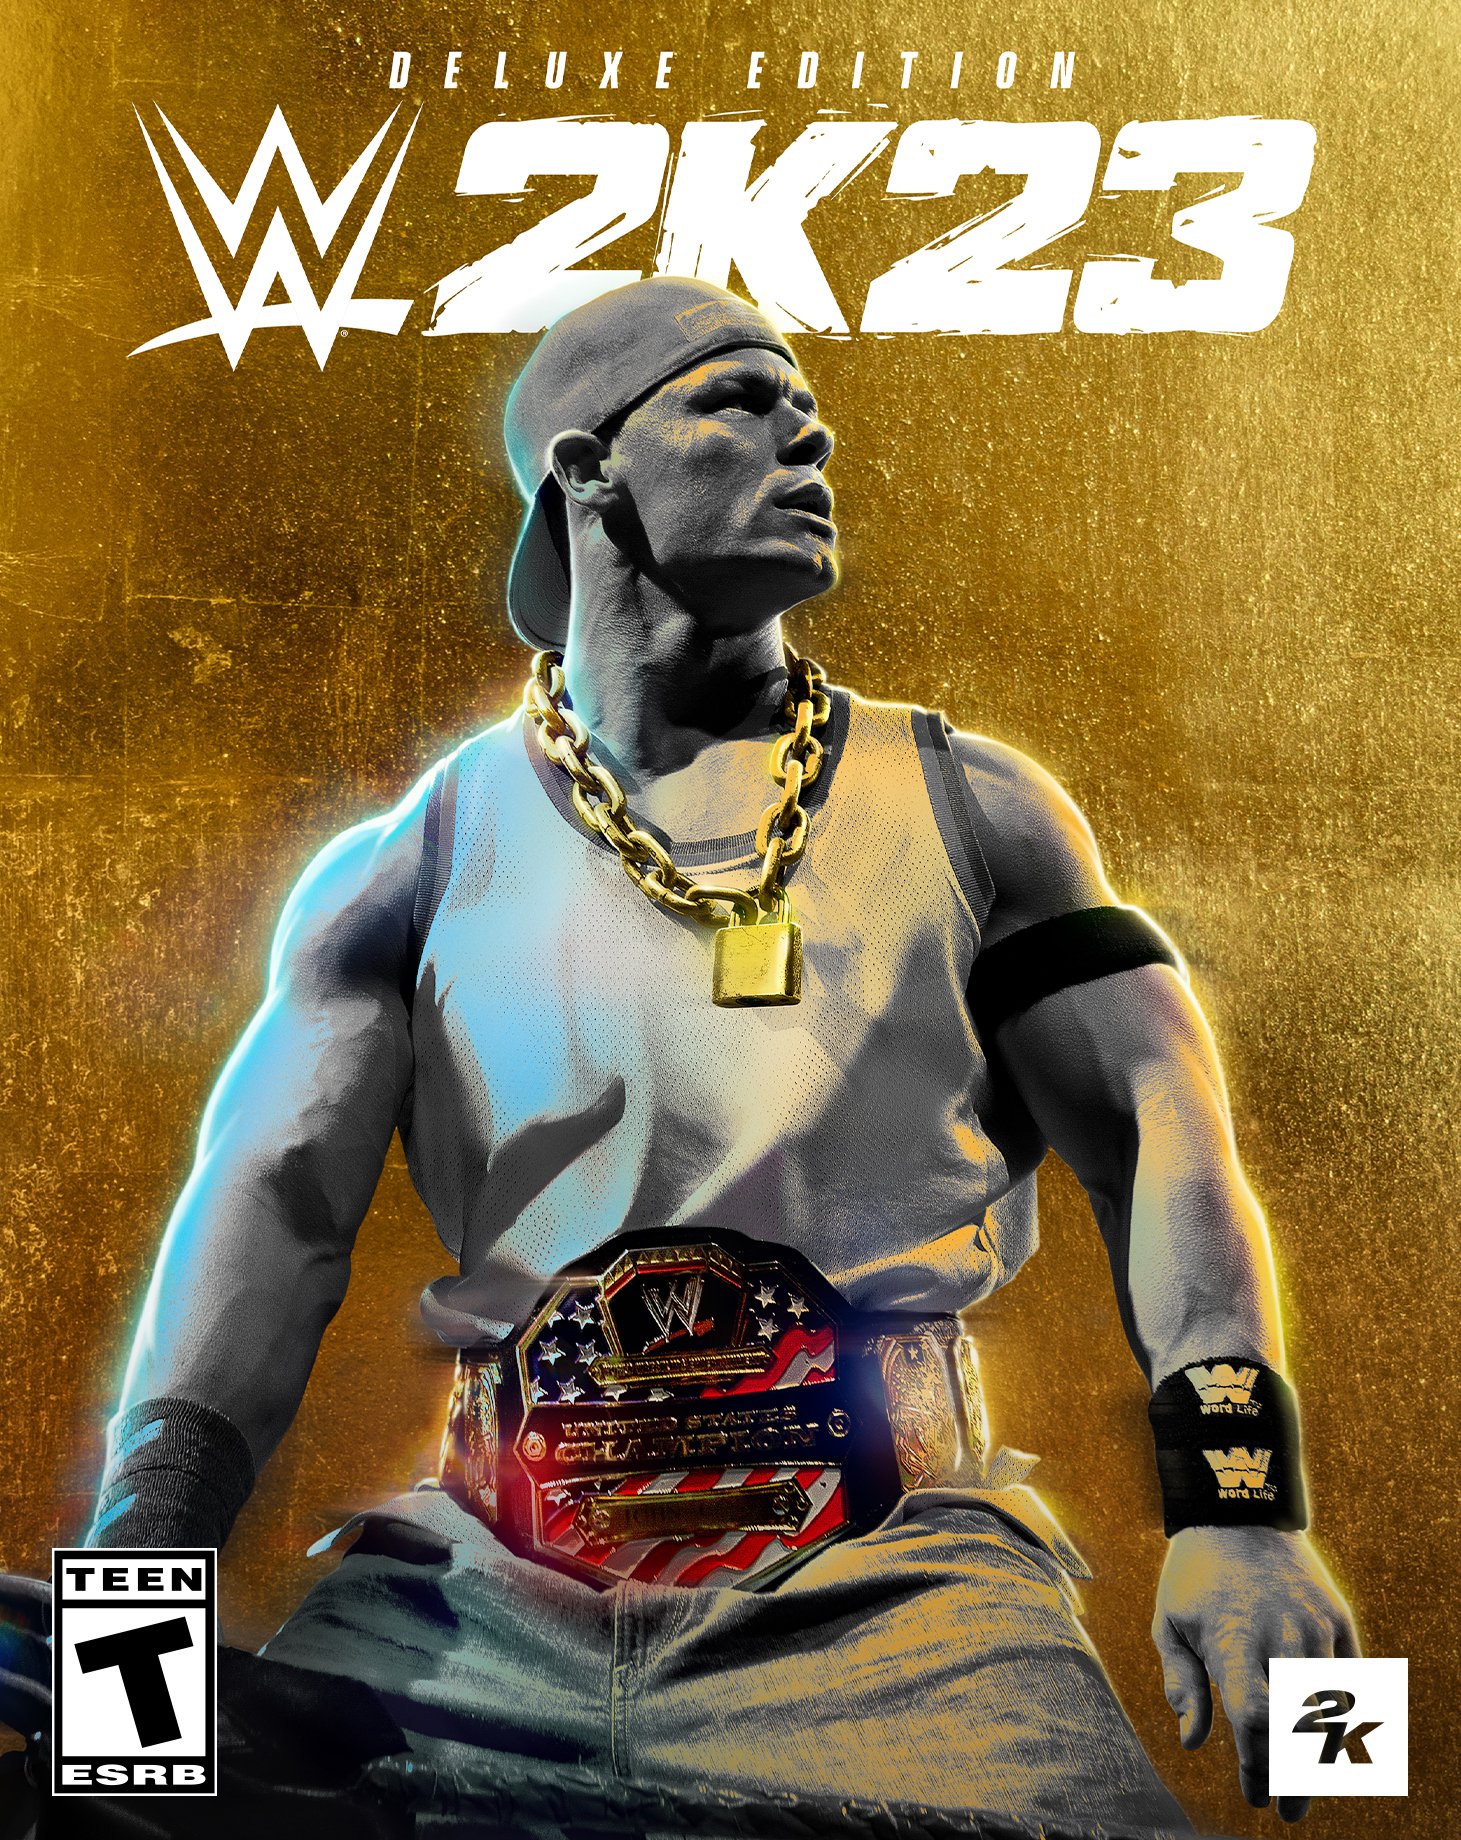 WWE 2K23 Deluxe Edition Key Art.jpg